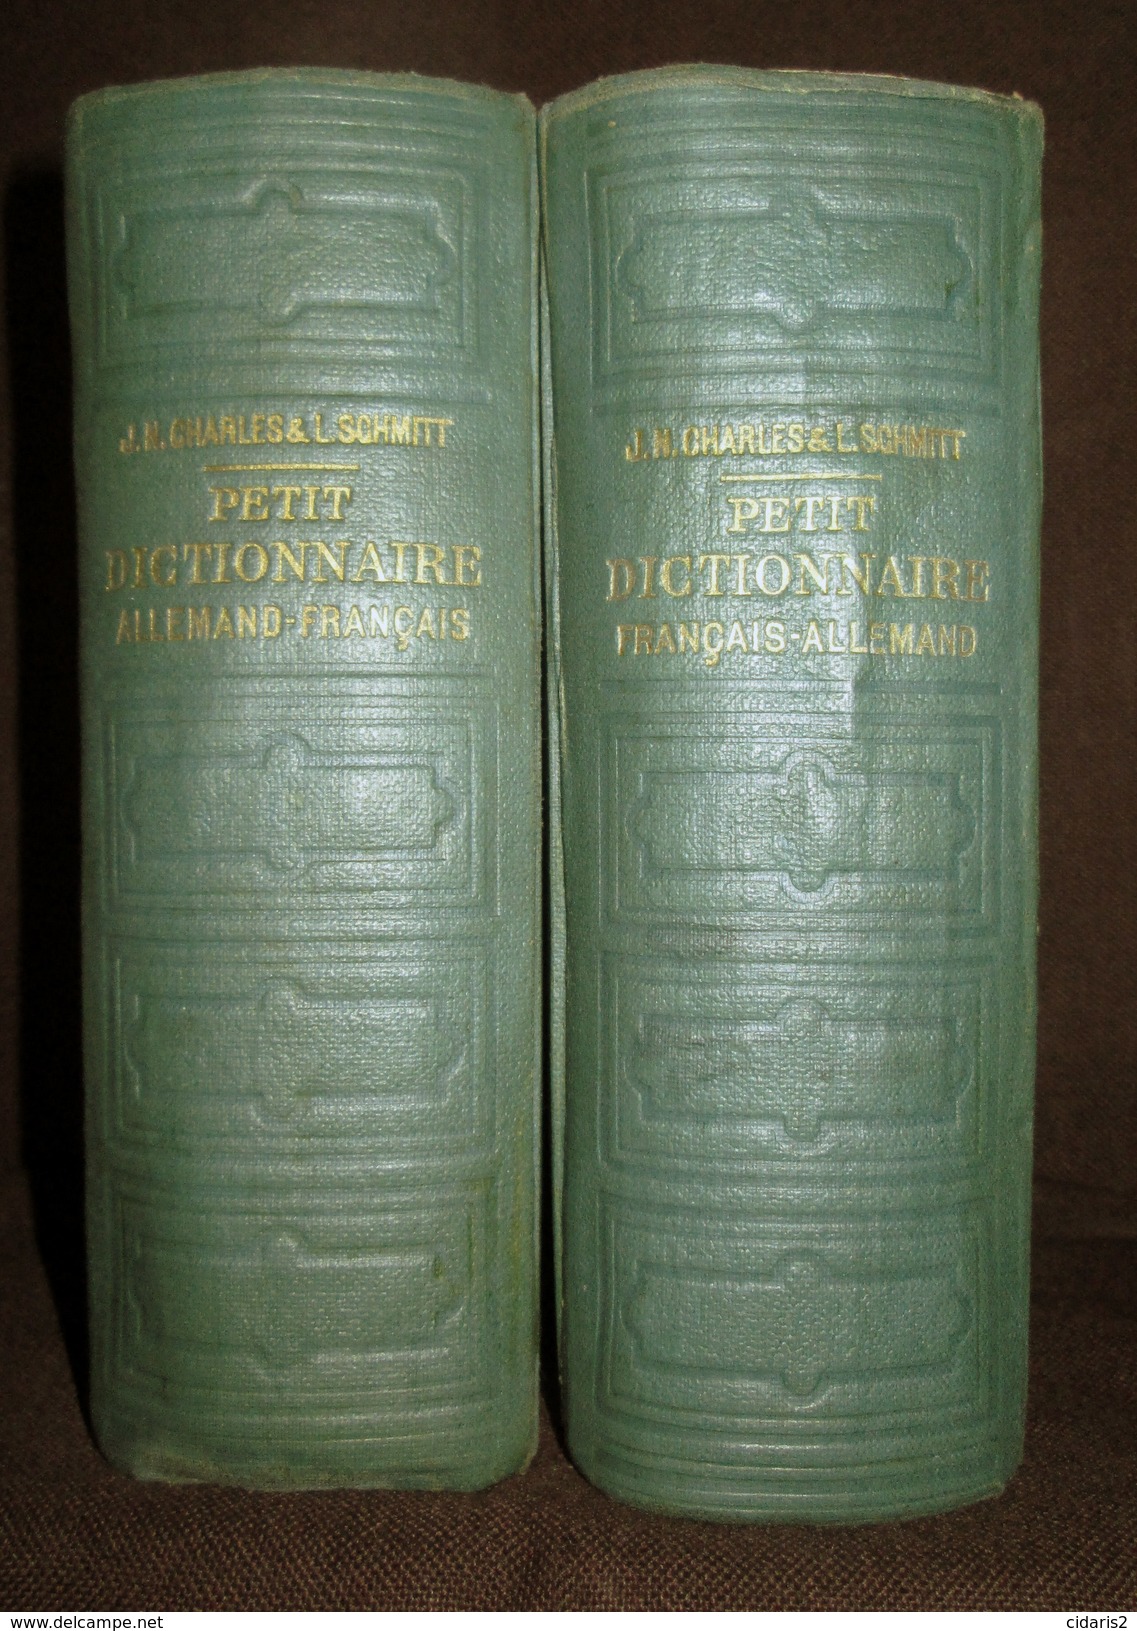 PETIT DICTIONNAIRE FRANCAIS ALLEMAND Franzosisch Deutsch Worterbuch Dictionary CHARLES SCHMITT 2 Volumes 1940 ! - Dictionaries